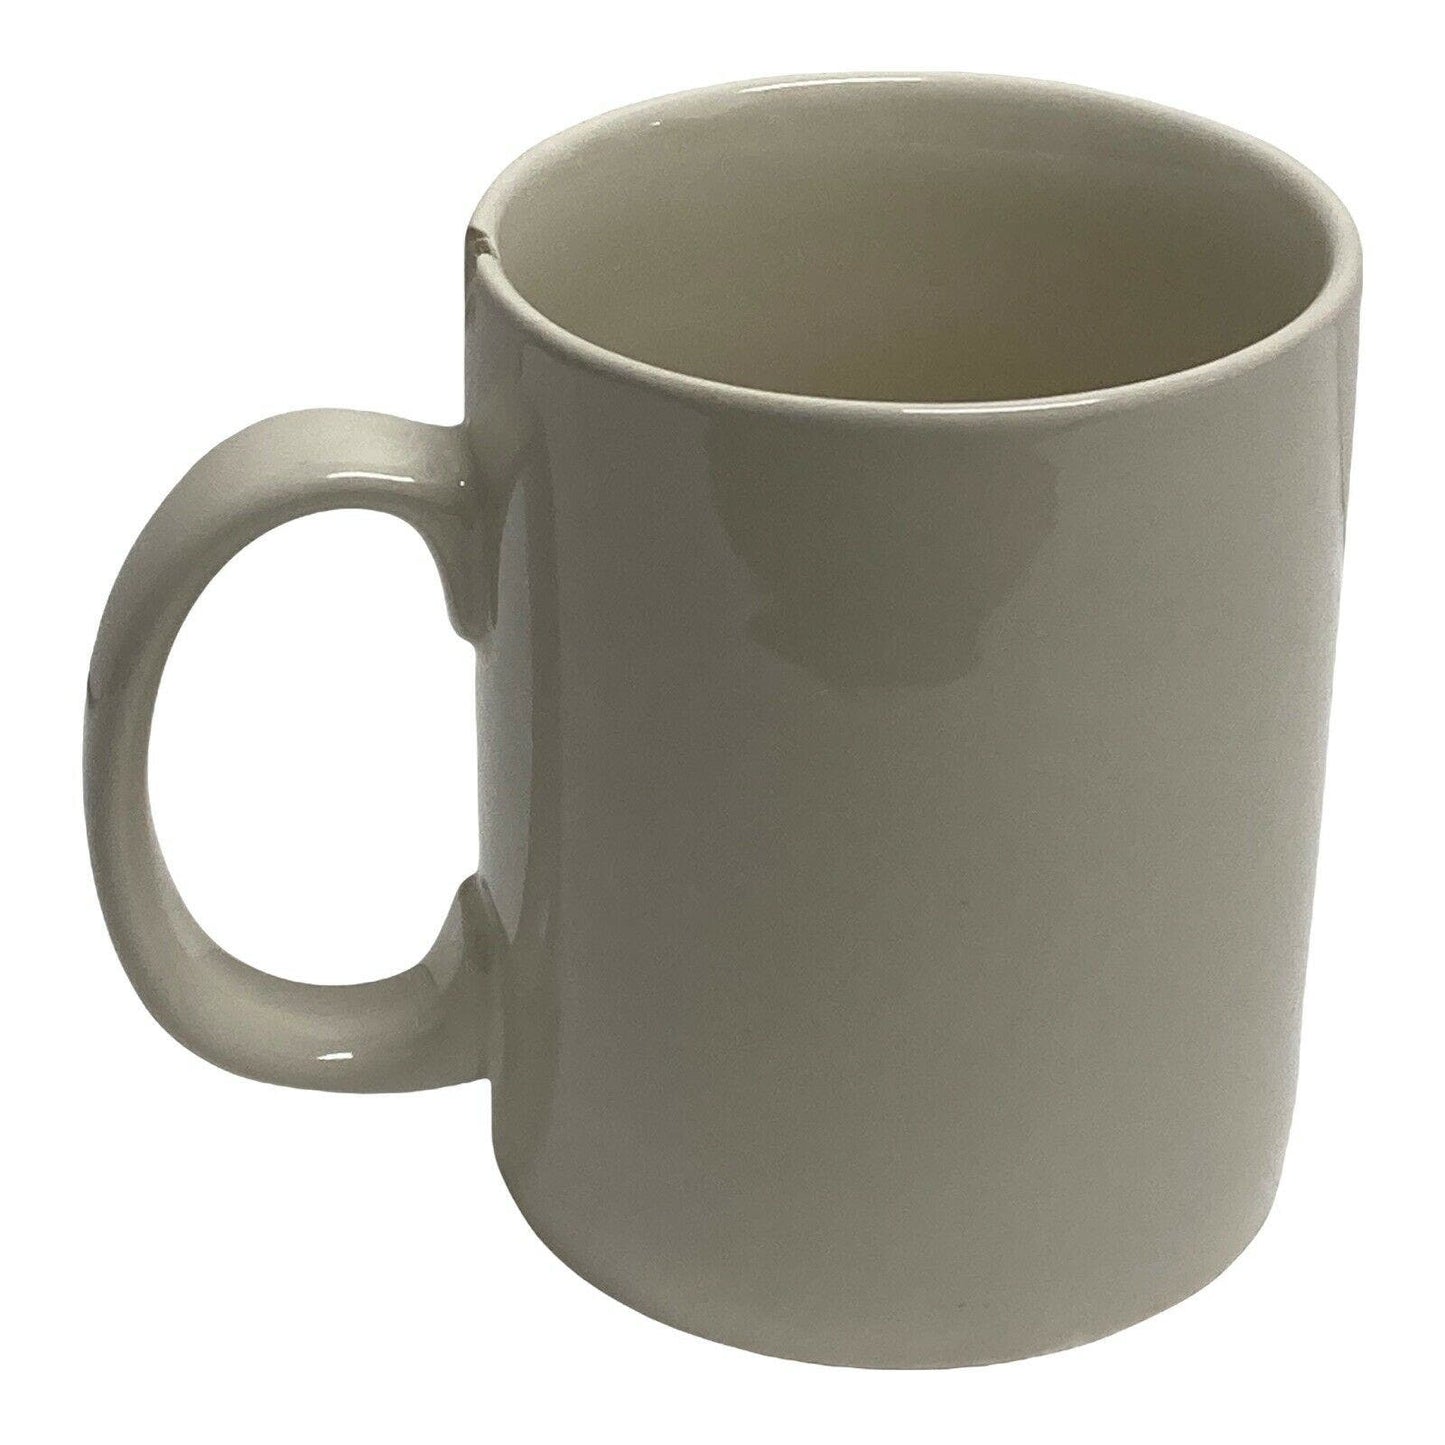 Designs By Kathy TGIF This Grandma is Fabulous Ceramic Coffee Tea Mug Cup